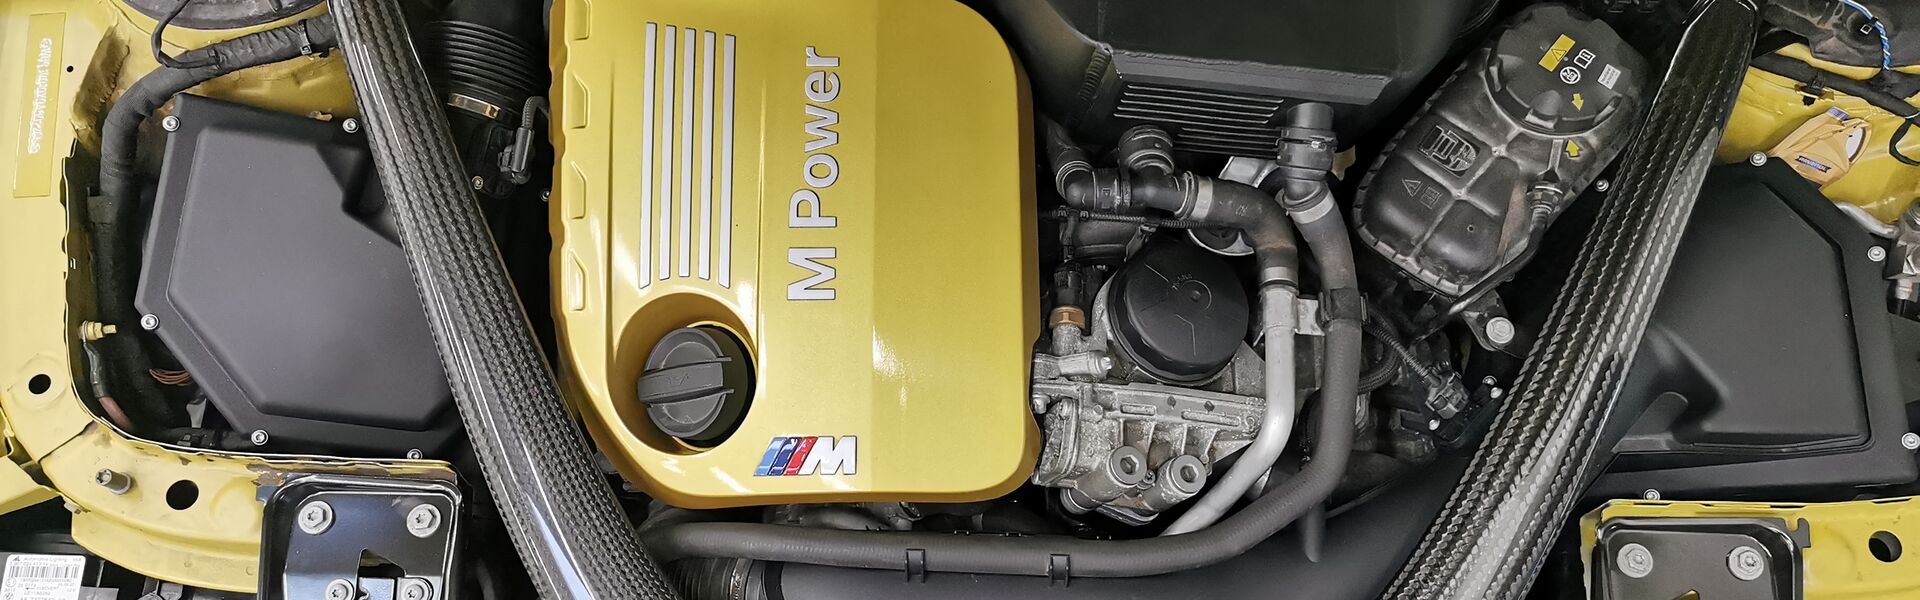 Engine BMW 1M E82 COUPE